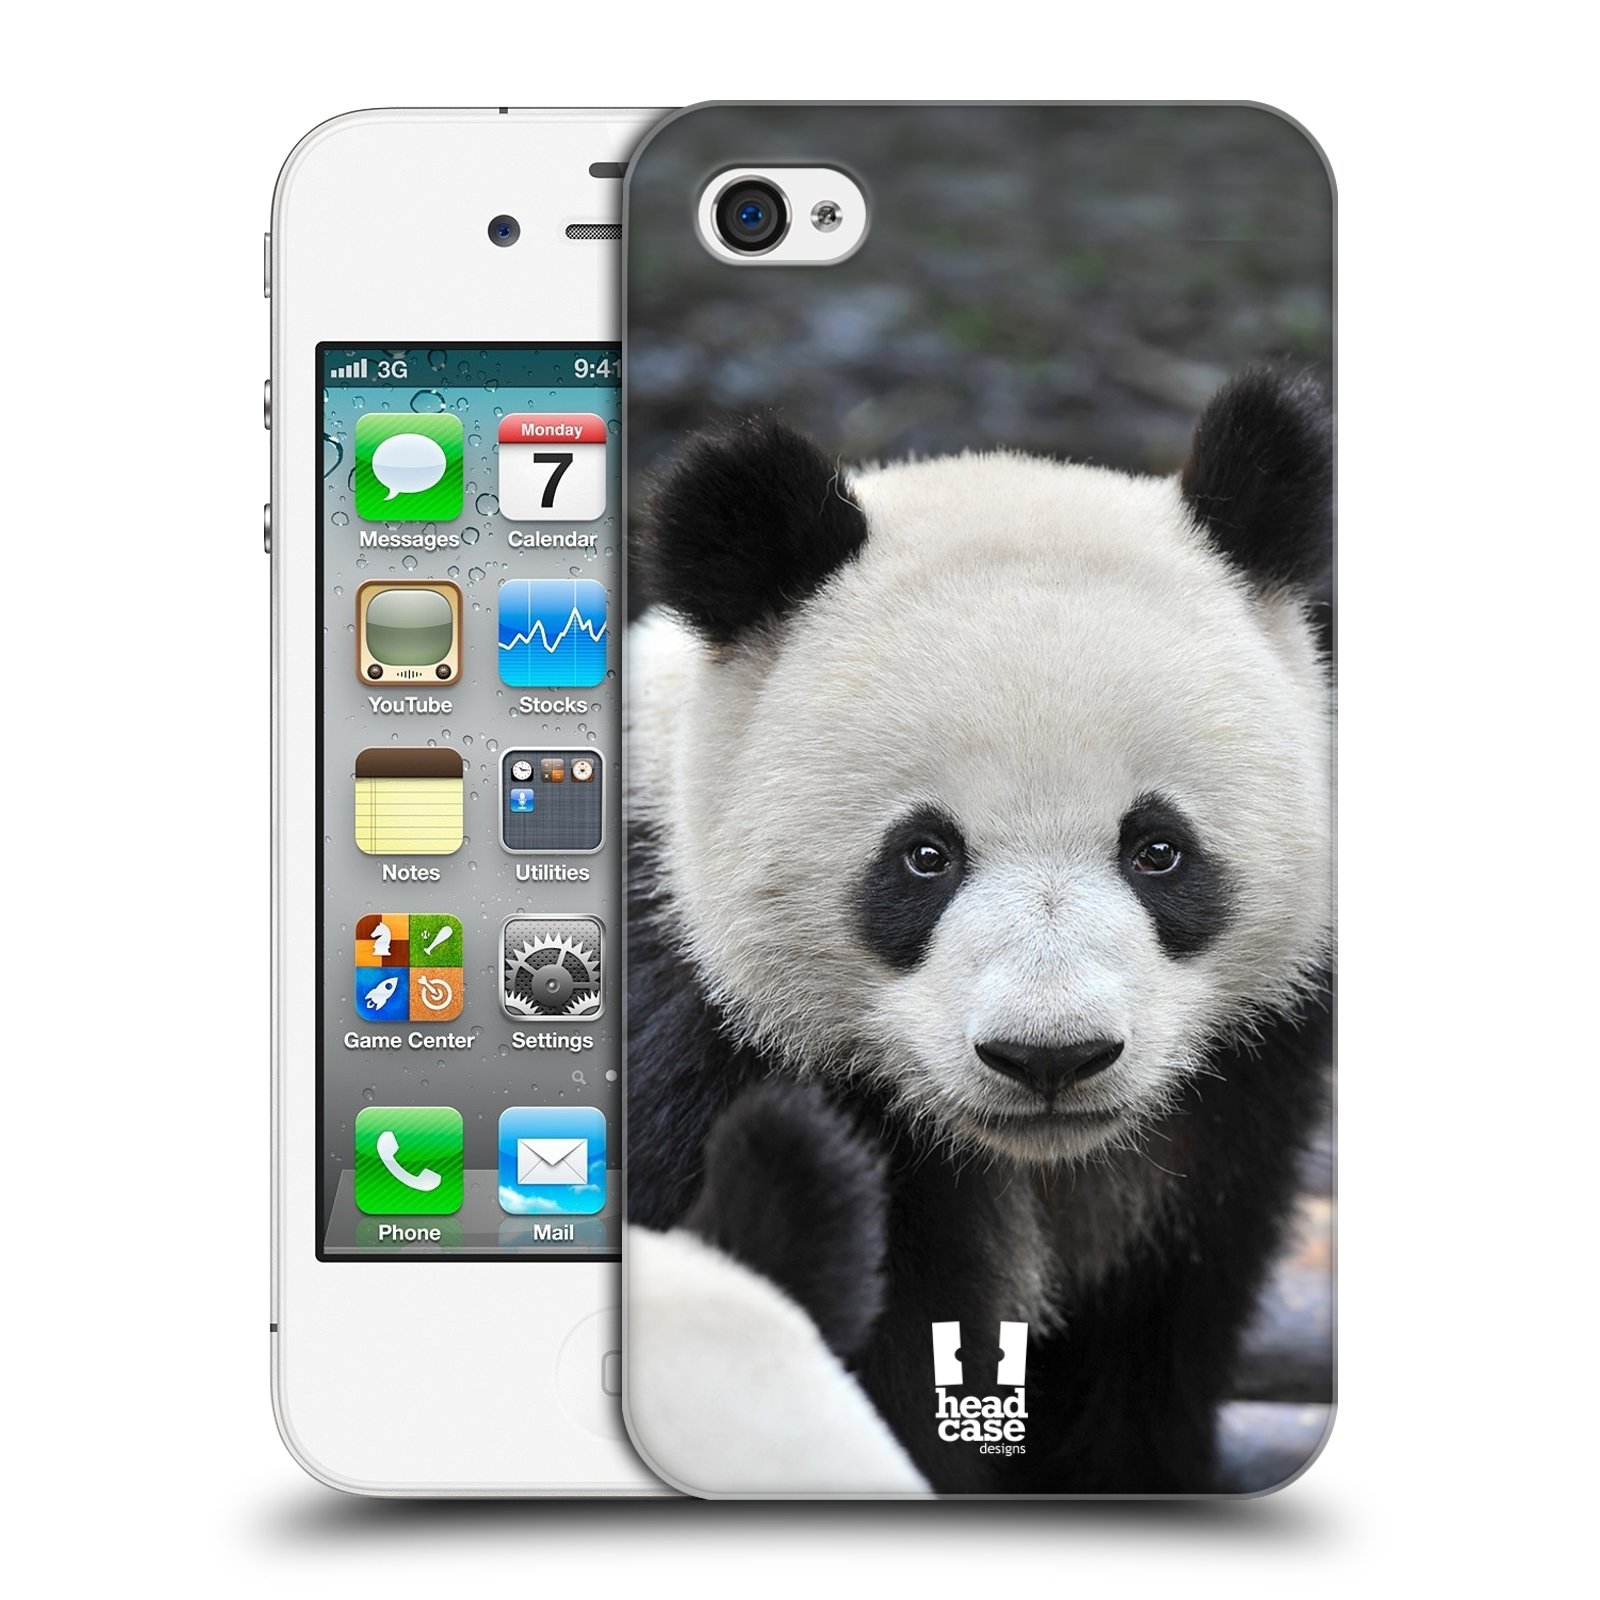 Zadní obal pro mobil Apple Iphone 4/4S - HEAD CASE - Svět zvířat medvěd panda